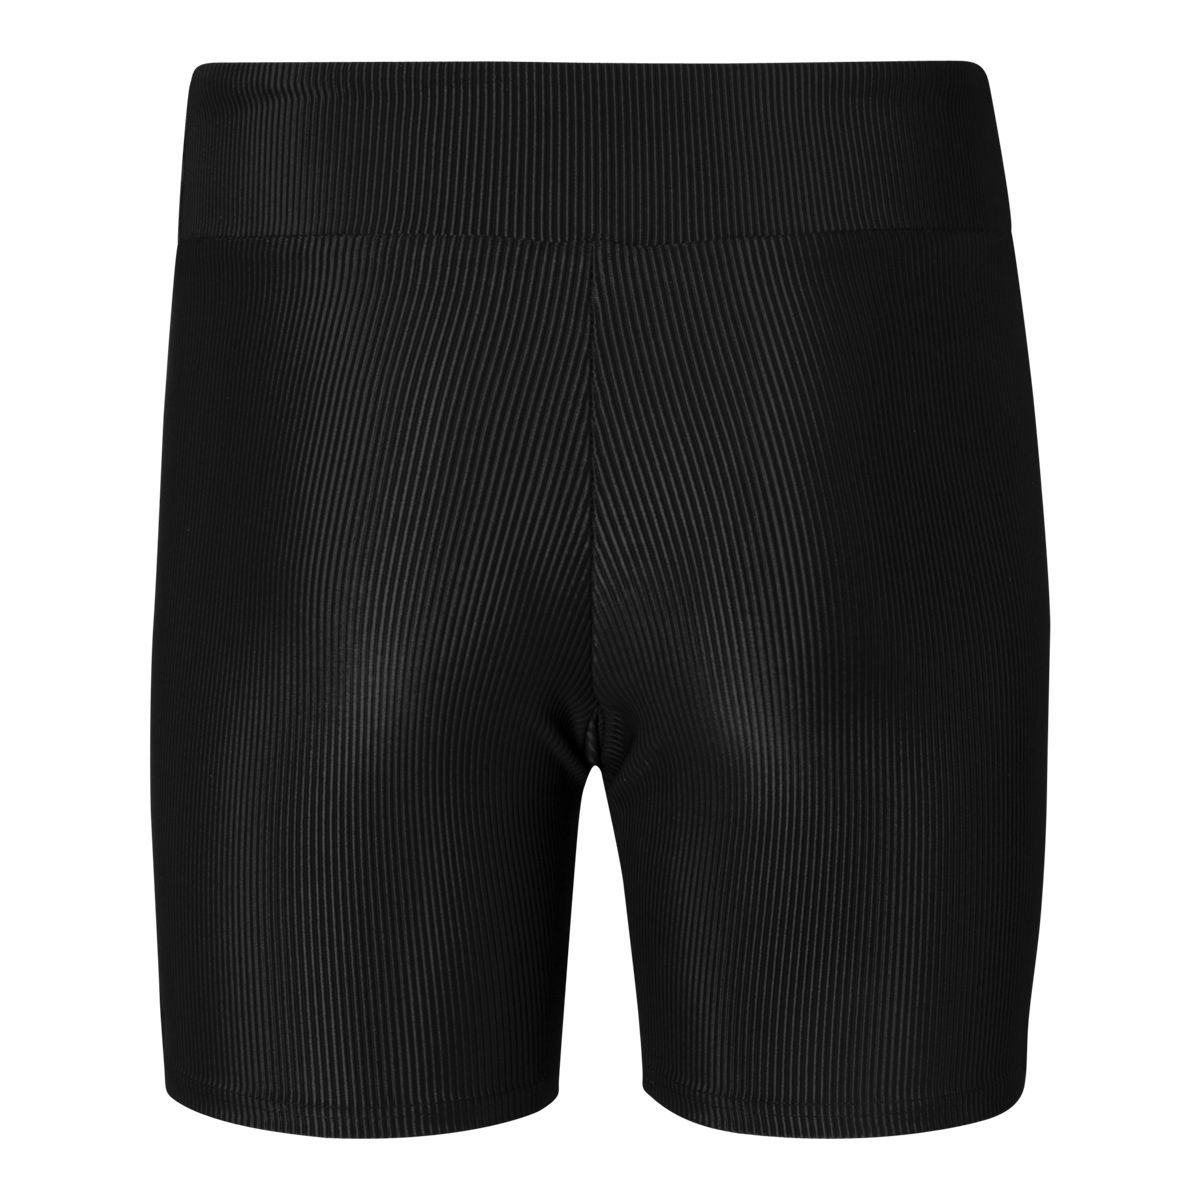 Onzie High Rise Bike Shorts - 2225 Womens - Black